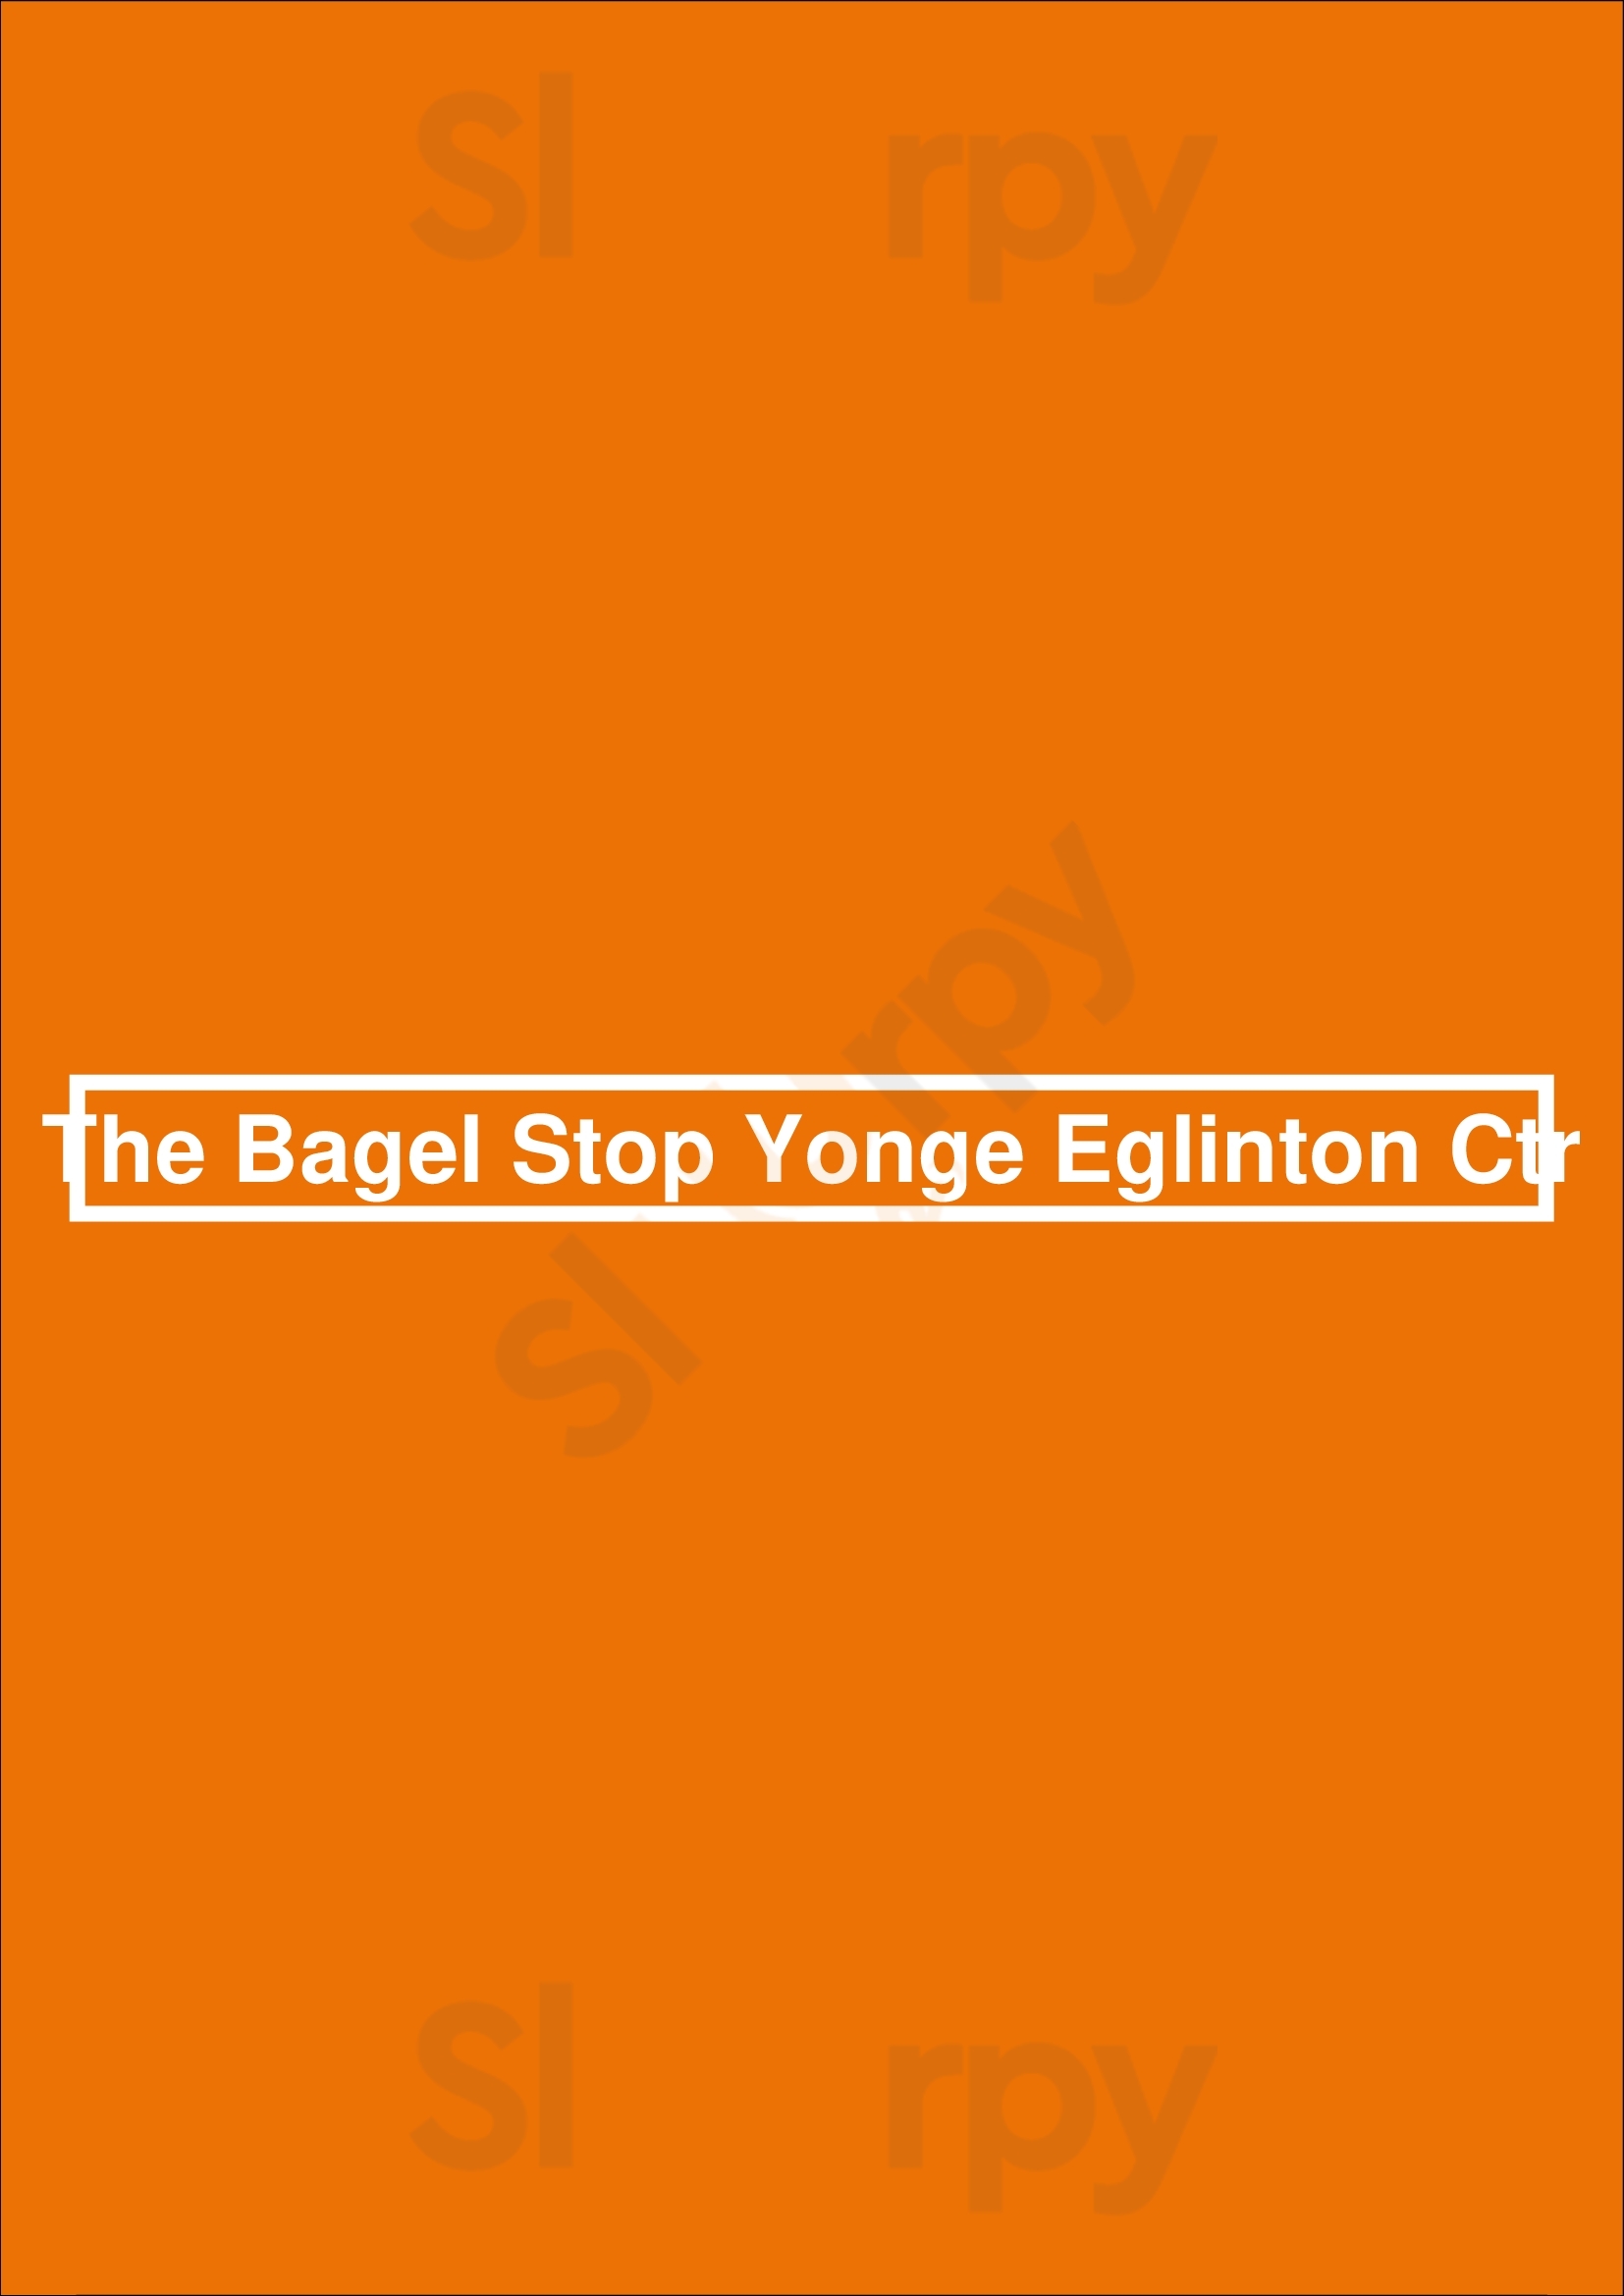 The Bagel Stop Yonge Eglinton Ctr Toronto Menu - 1